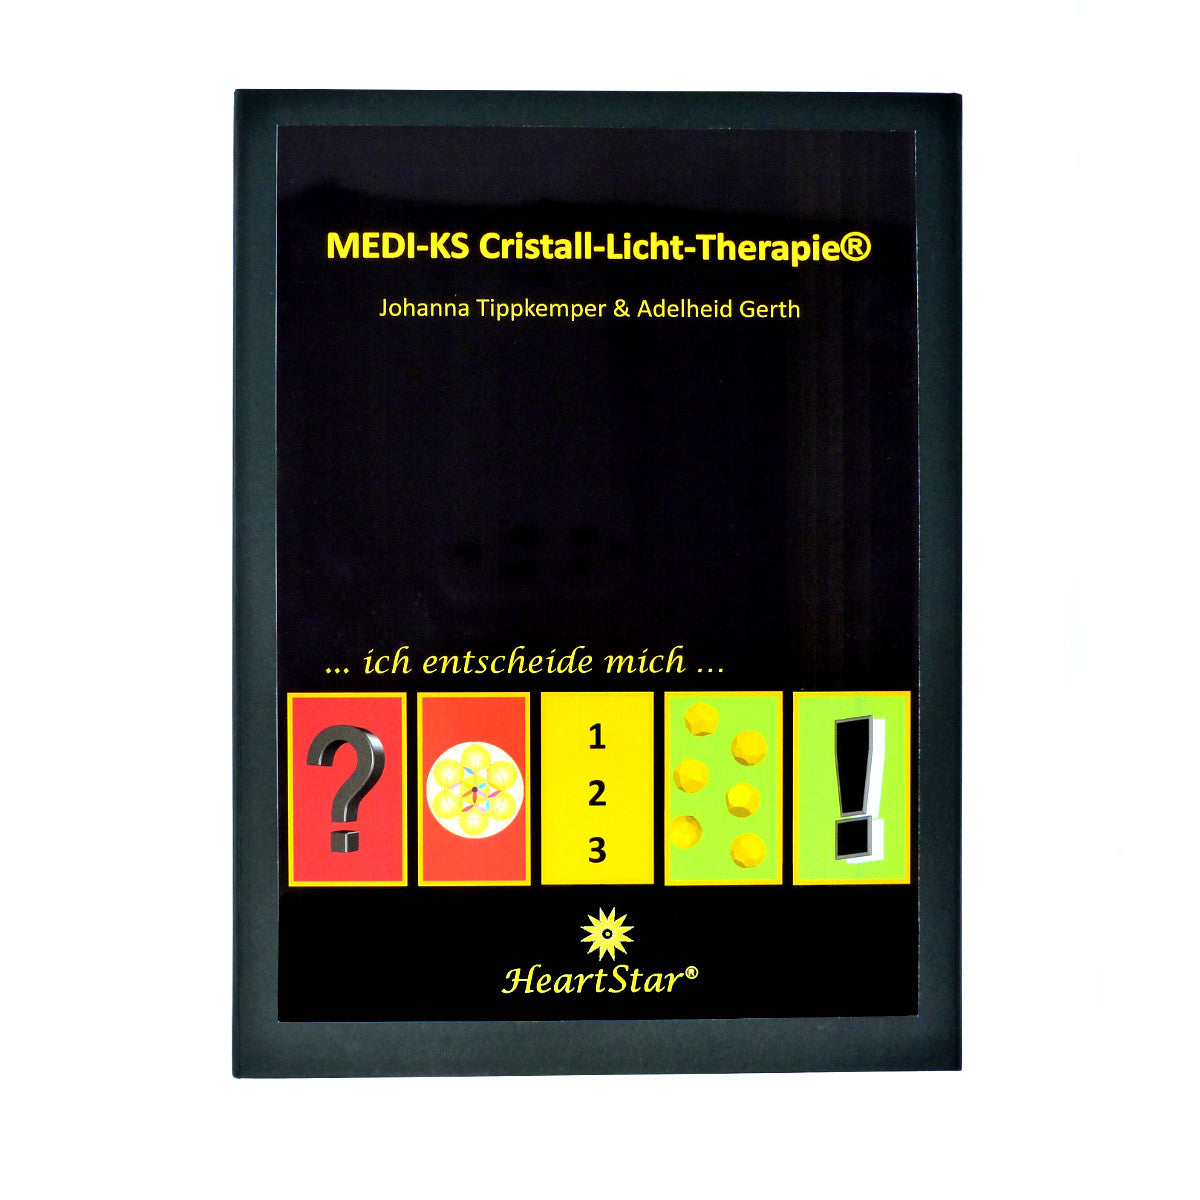 MEDI-KS Cristall-Licht-Therapie ® + Das Buch "Lichtkristalle"